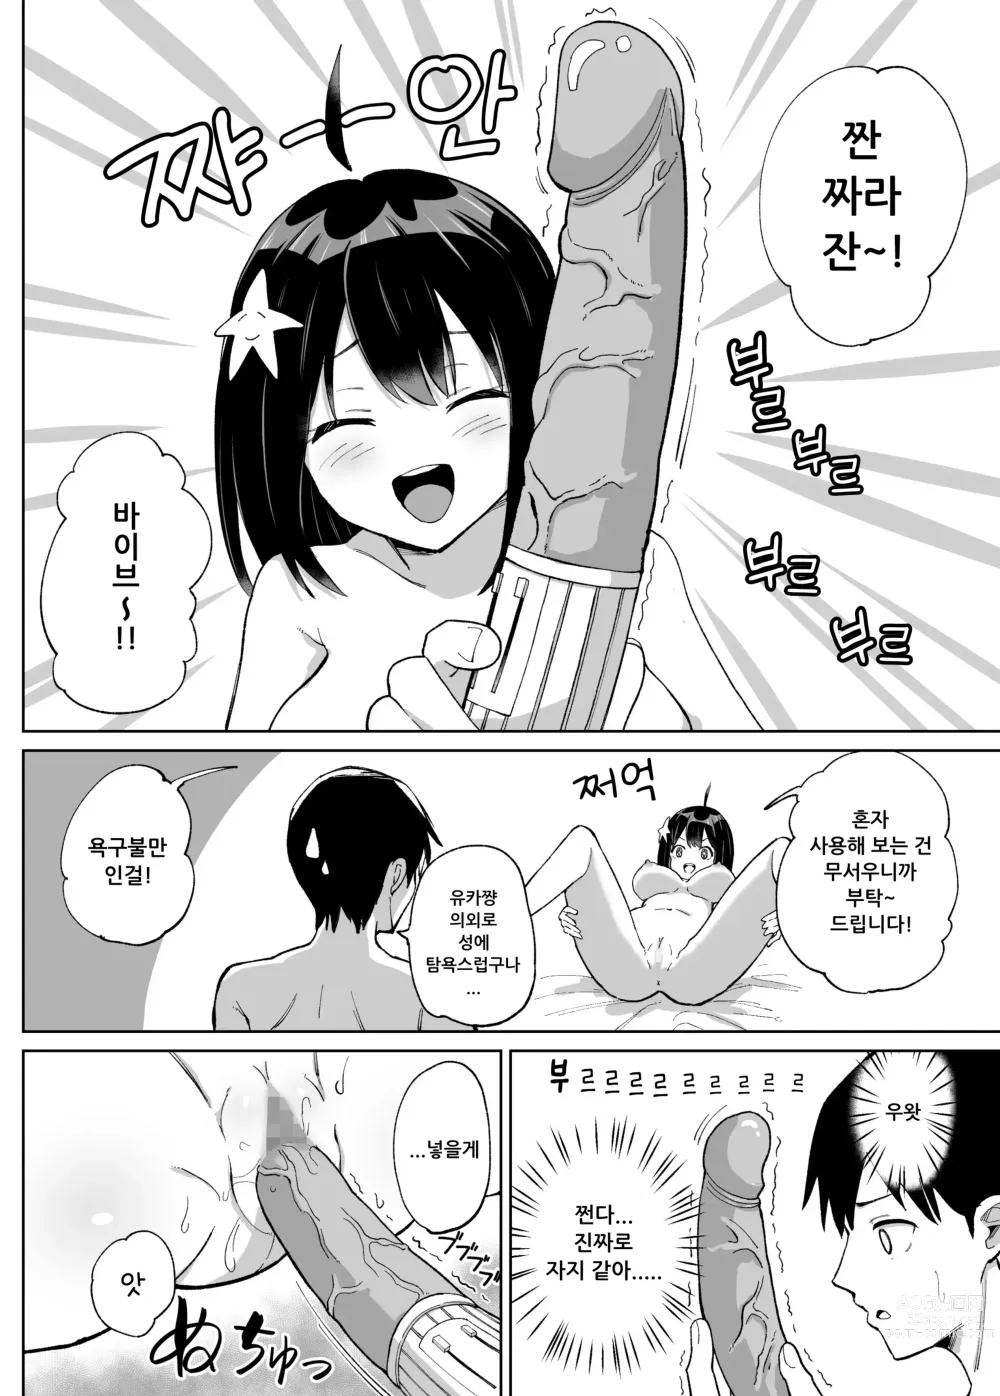 Page 5 of doujinshi 소꿉친구인 그녀에게 받은 X'mas 선물은 네토라레 였습니다